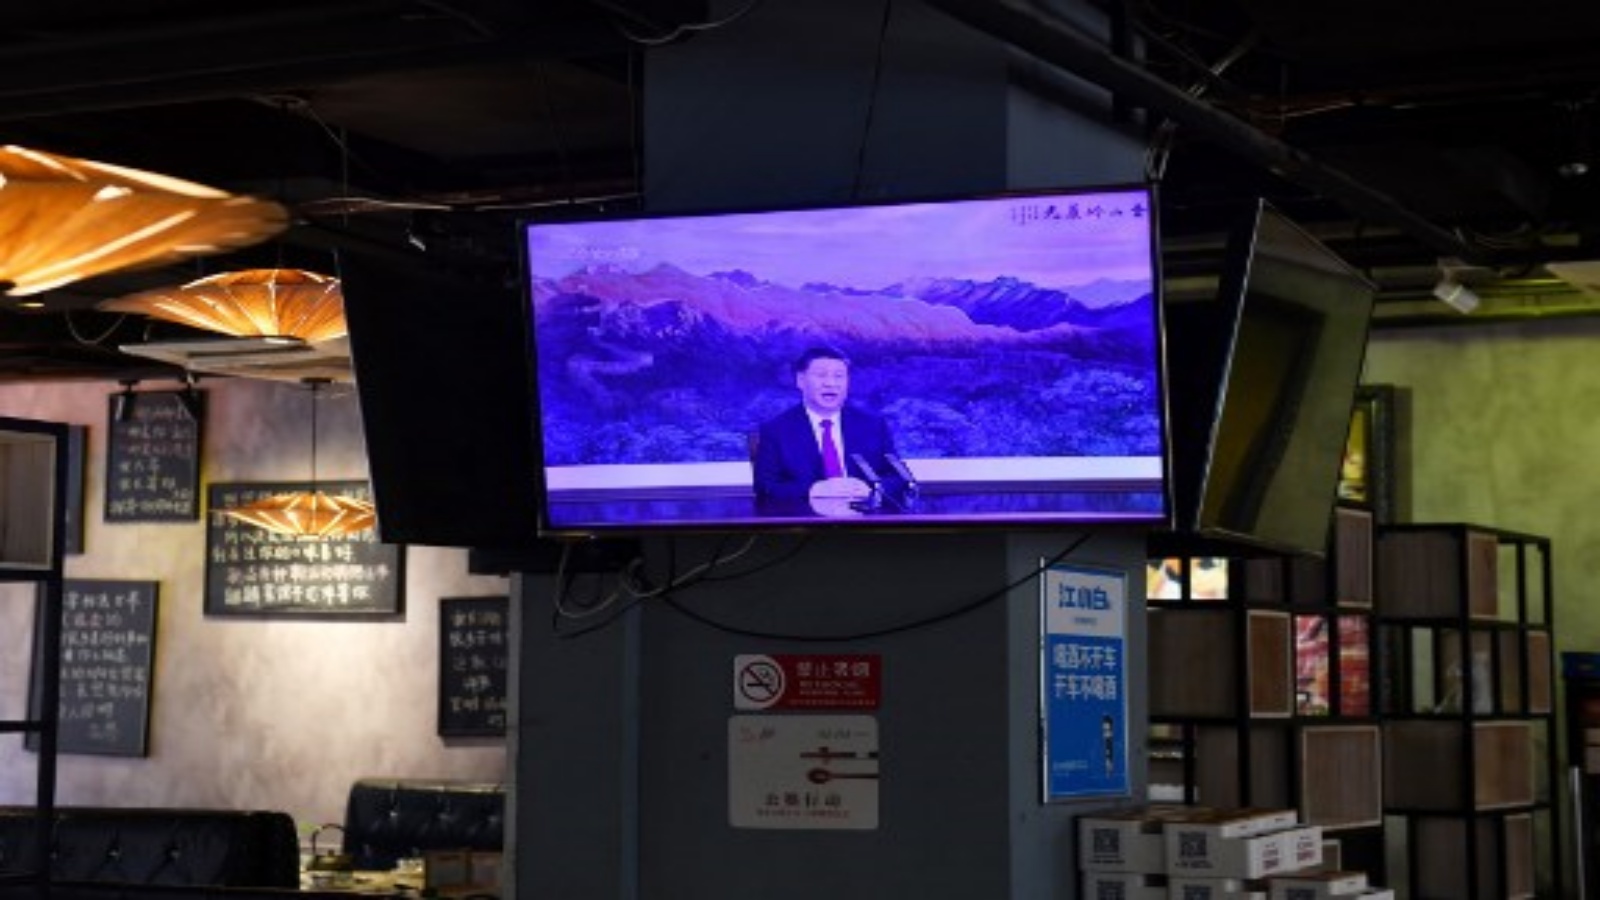 شاشة تلفزيونية تعرض برنامجًا إخباريًا حول خطاب الرئيس الصيني شي جين بينغ عبر اجتماع افتراضي لمنتدى APEC في ماليزيا في 19 نوفمبر 2020.